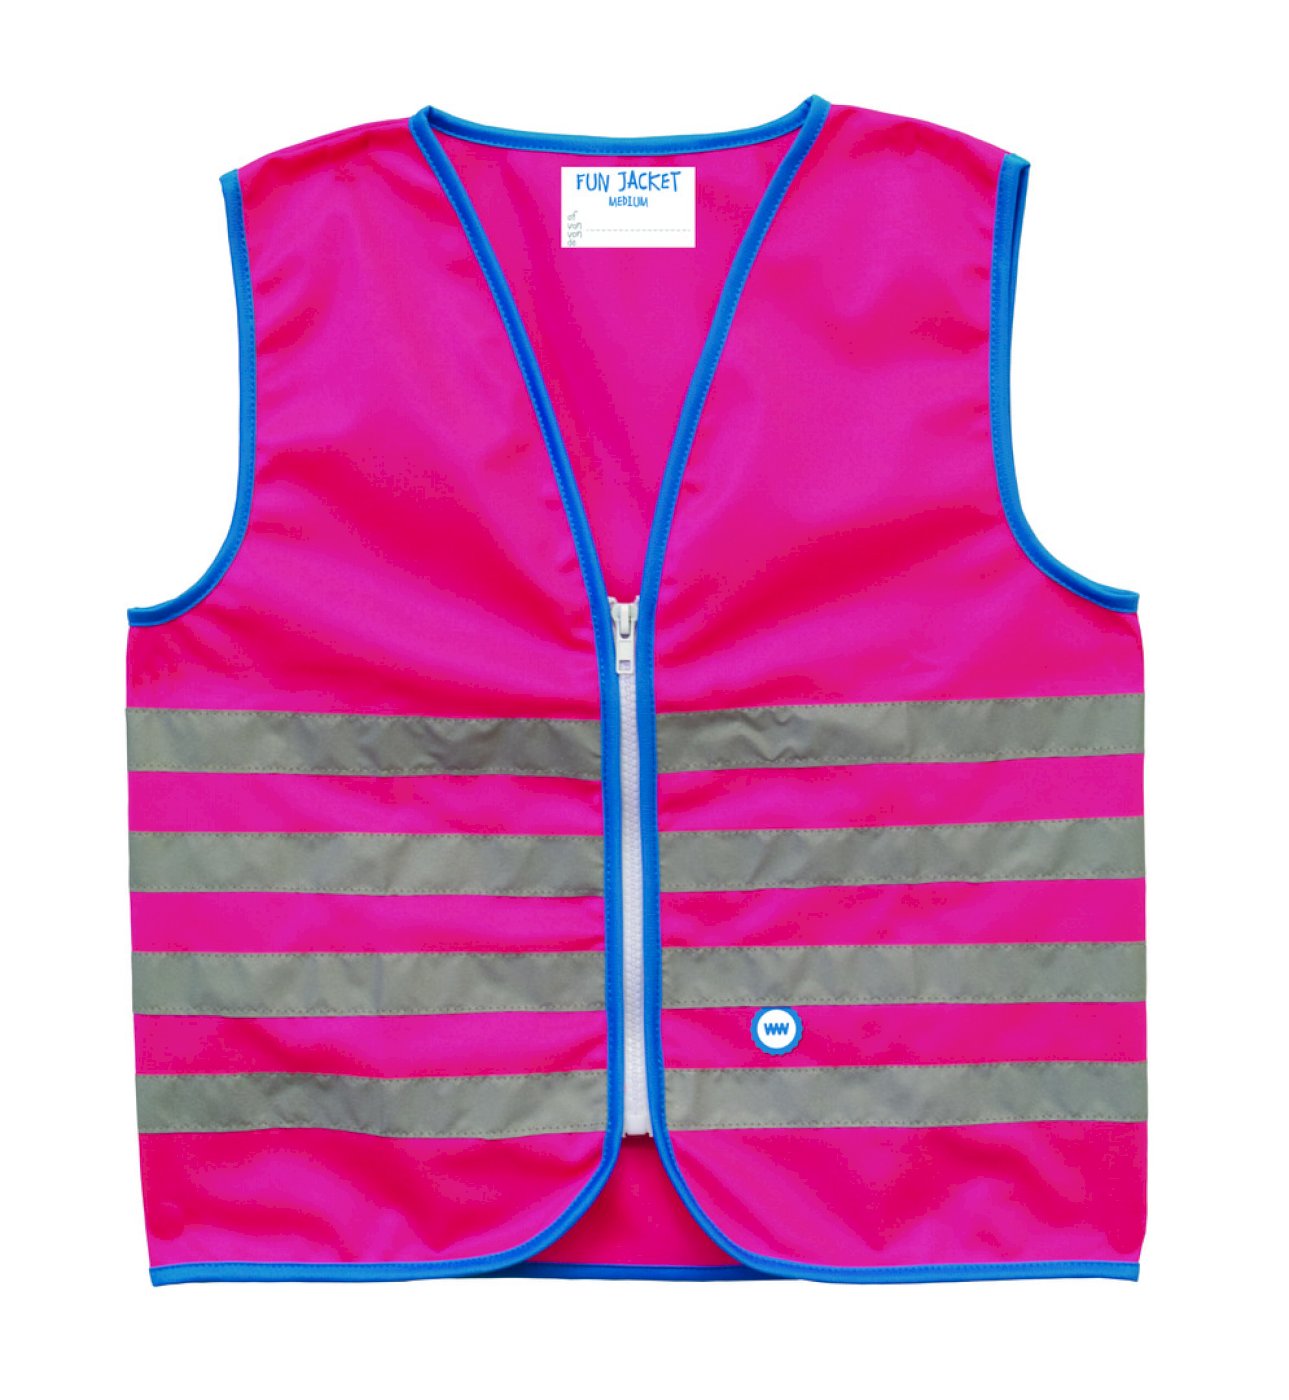 WOWOW Reflexweste Fun Jacket for Kids pink M (7-9 Jahre)